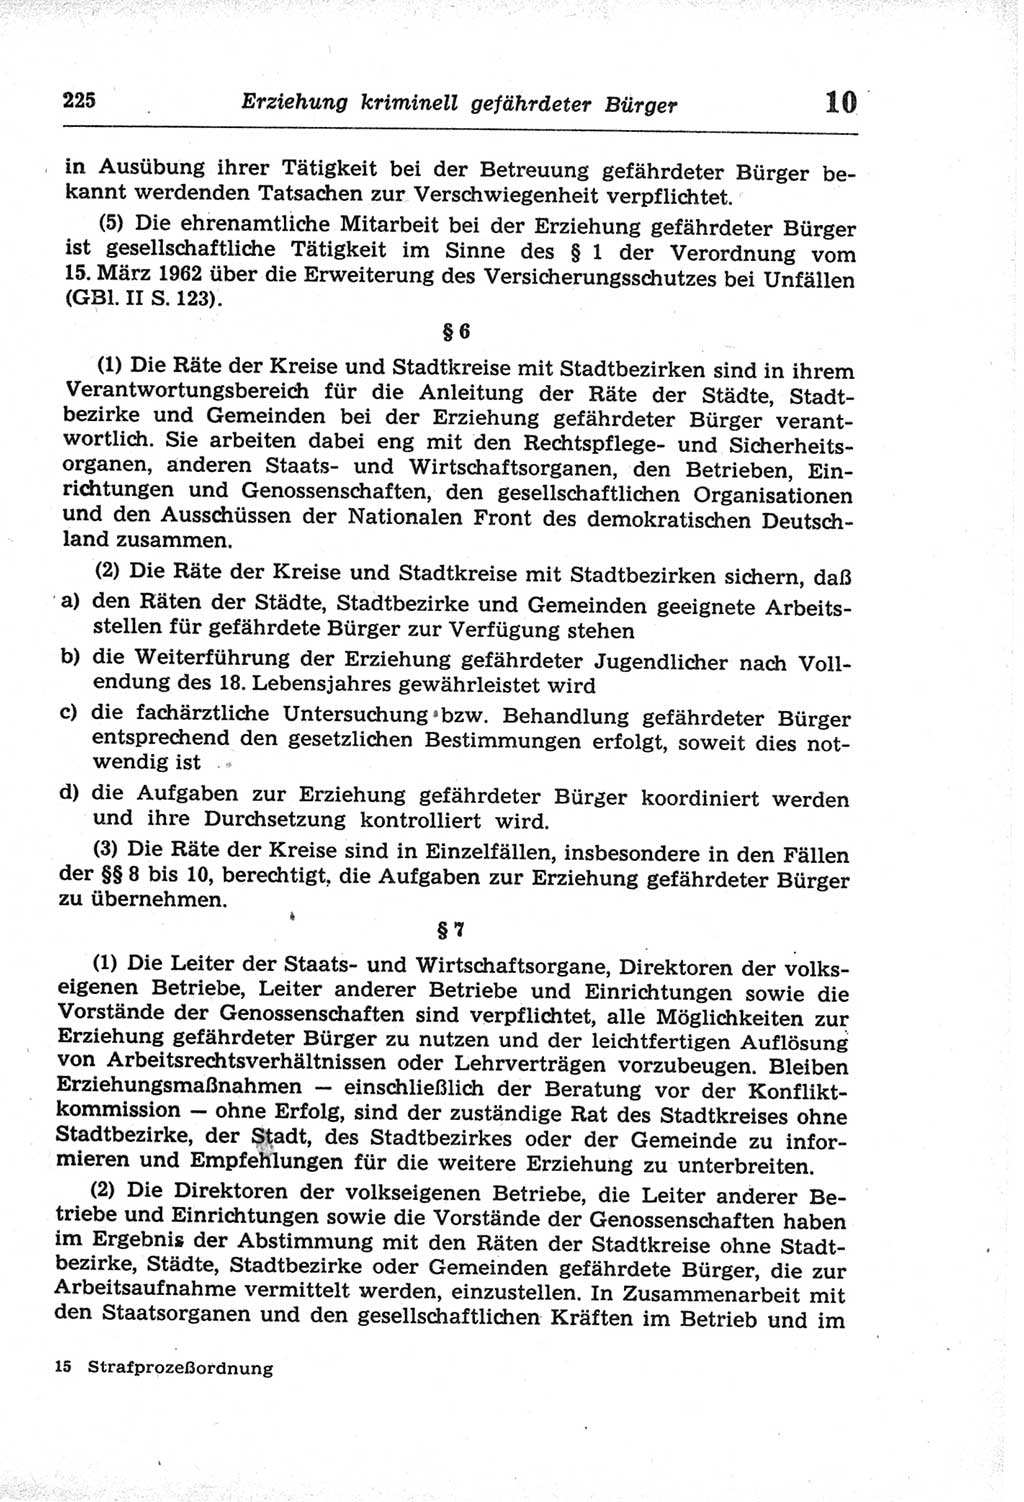 Strafprozeßordnung (StPO) der Deutschen Demokratischen Republik (DDR) und angrenzende Gesetze und Bestimmungen 1968, Seite 225 (StPO Ges. Bstgn. DDR 1968, S. 225)